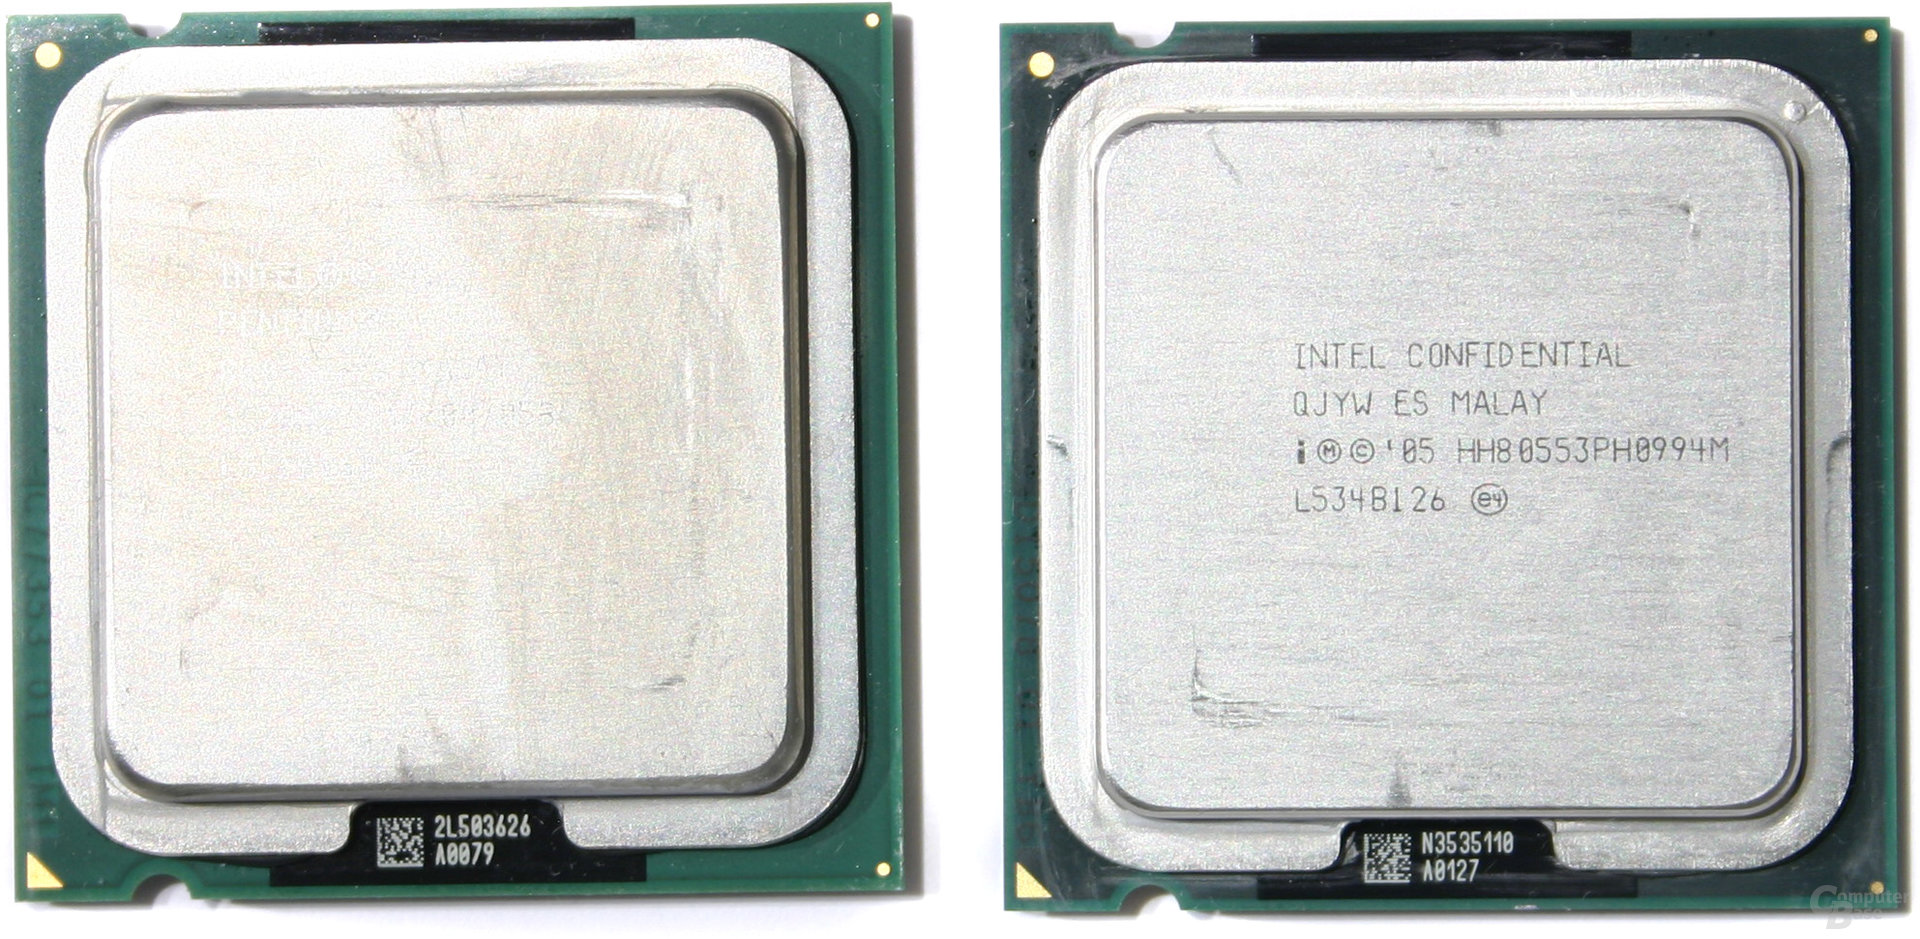 Pentium XE 955